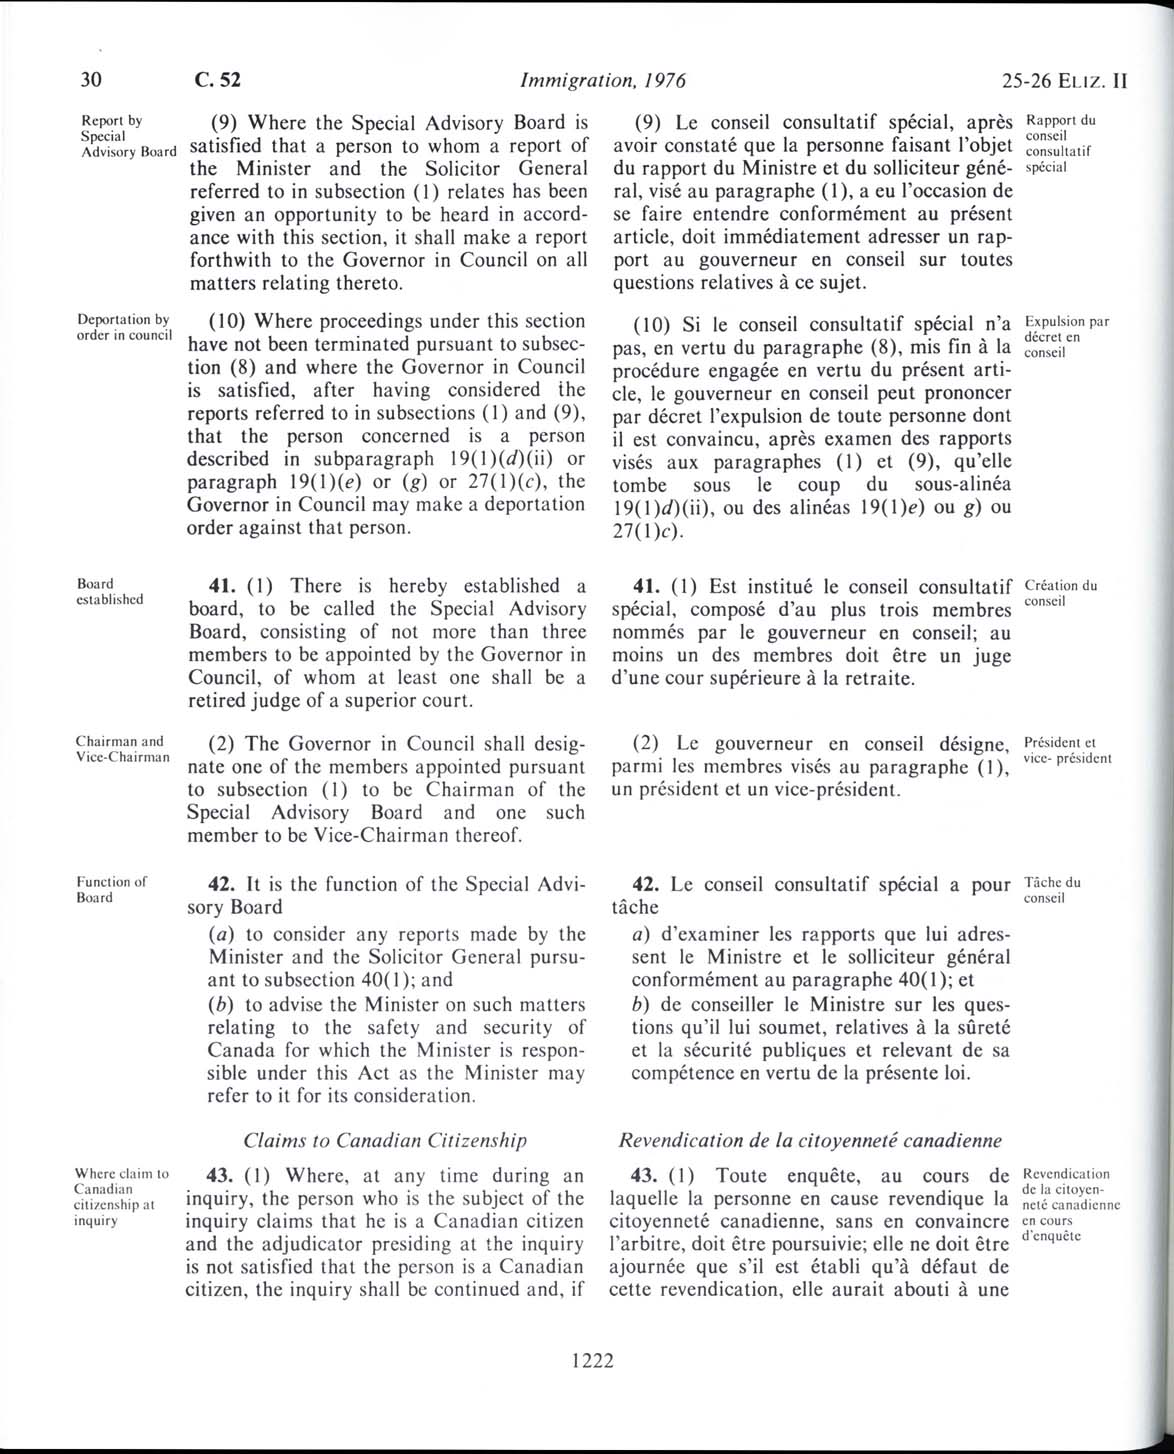 Page 1222 Loi sur l’immigration de 1976